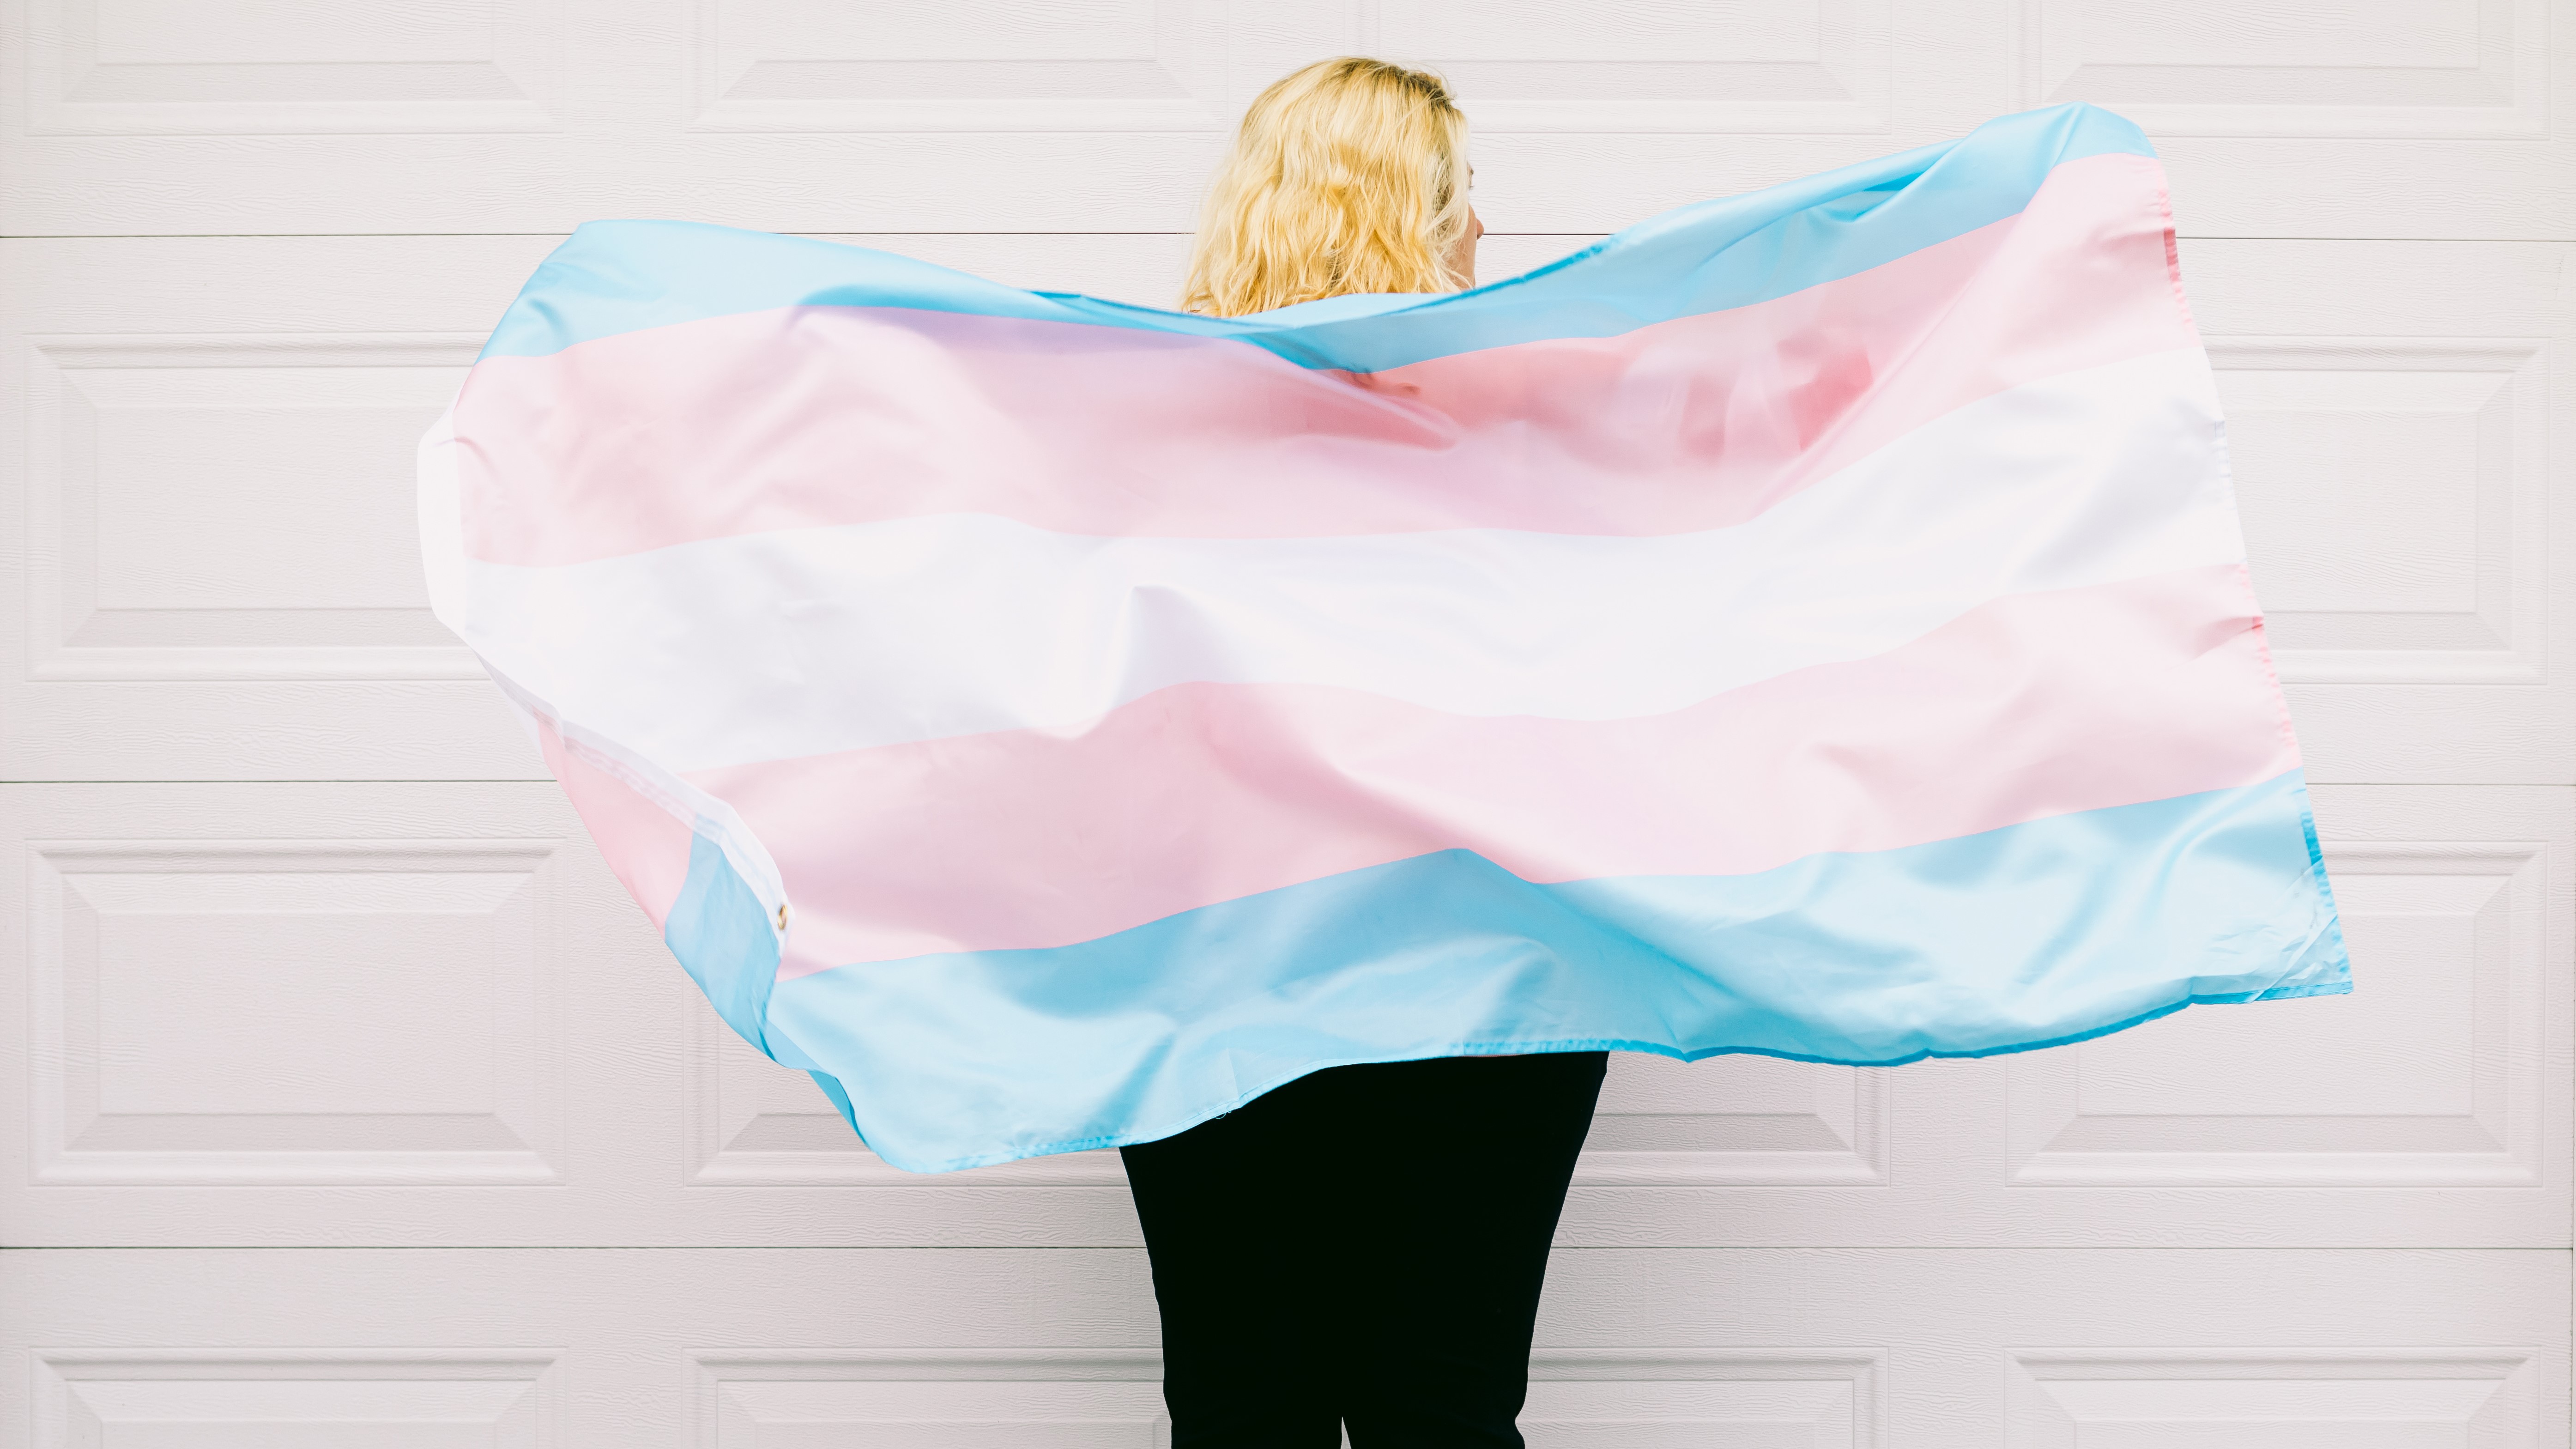 Weiße Wand, davor steht eine Person mit längeren Haaren mit dem Gesicht zur Wand. Die Person hält vor ihrem Rücken die Transgender-Flagge.